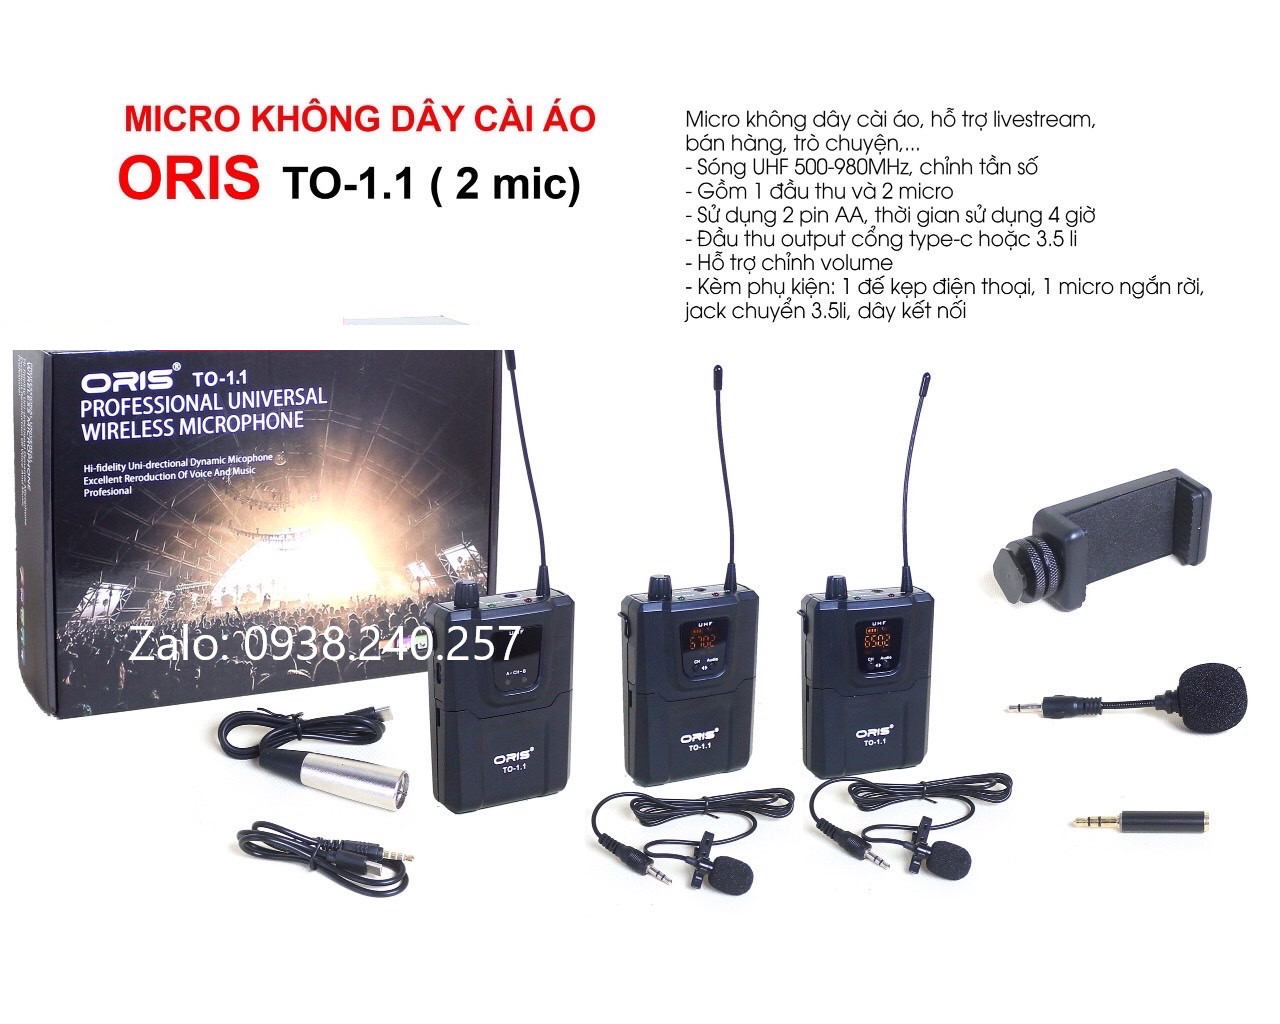 Micro không dây cài áo oris TO-1.1 ( 2 mic) hỗ trợ livestream, bán hàng, lọc tạp âm tốt, âm thanh trung thực